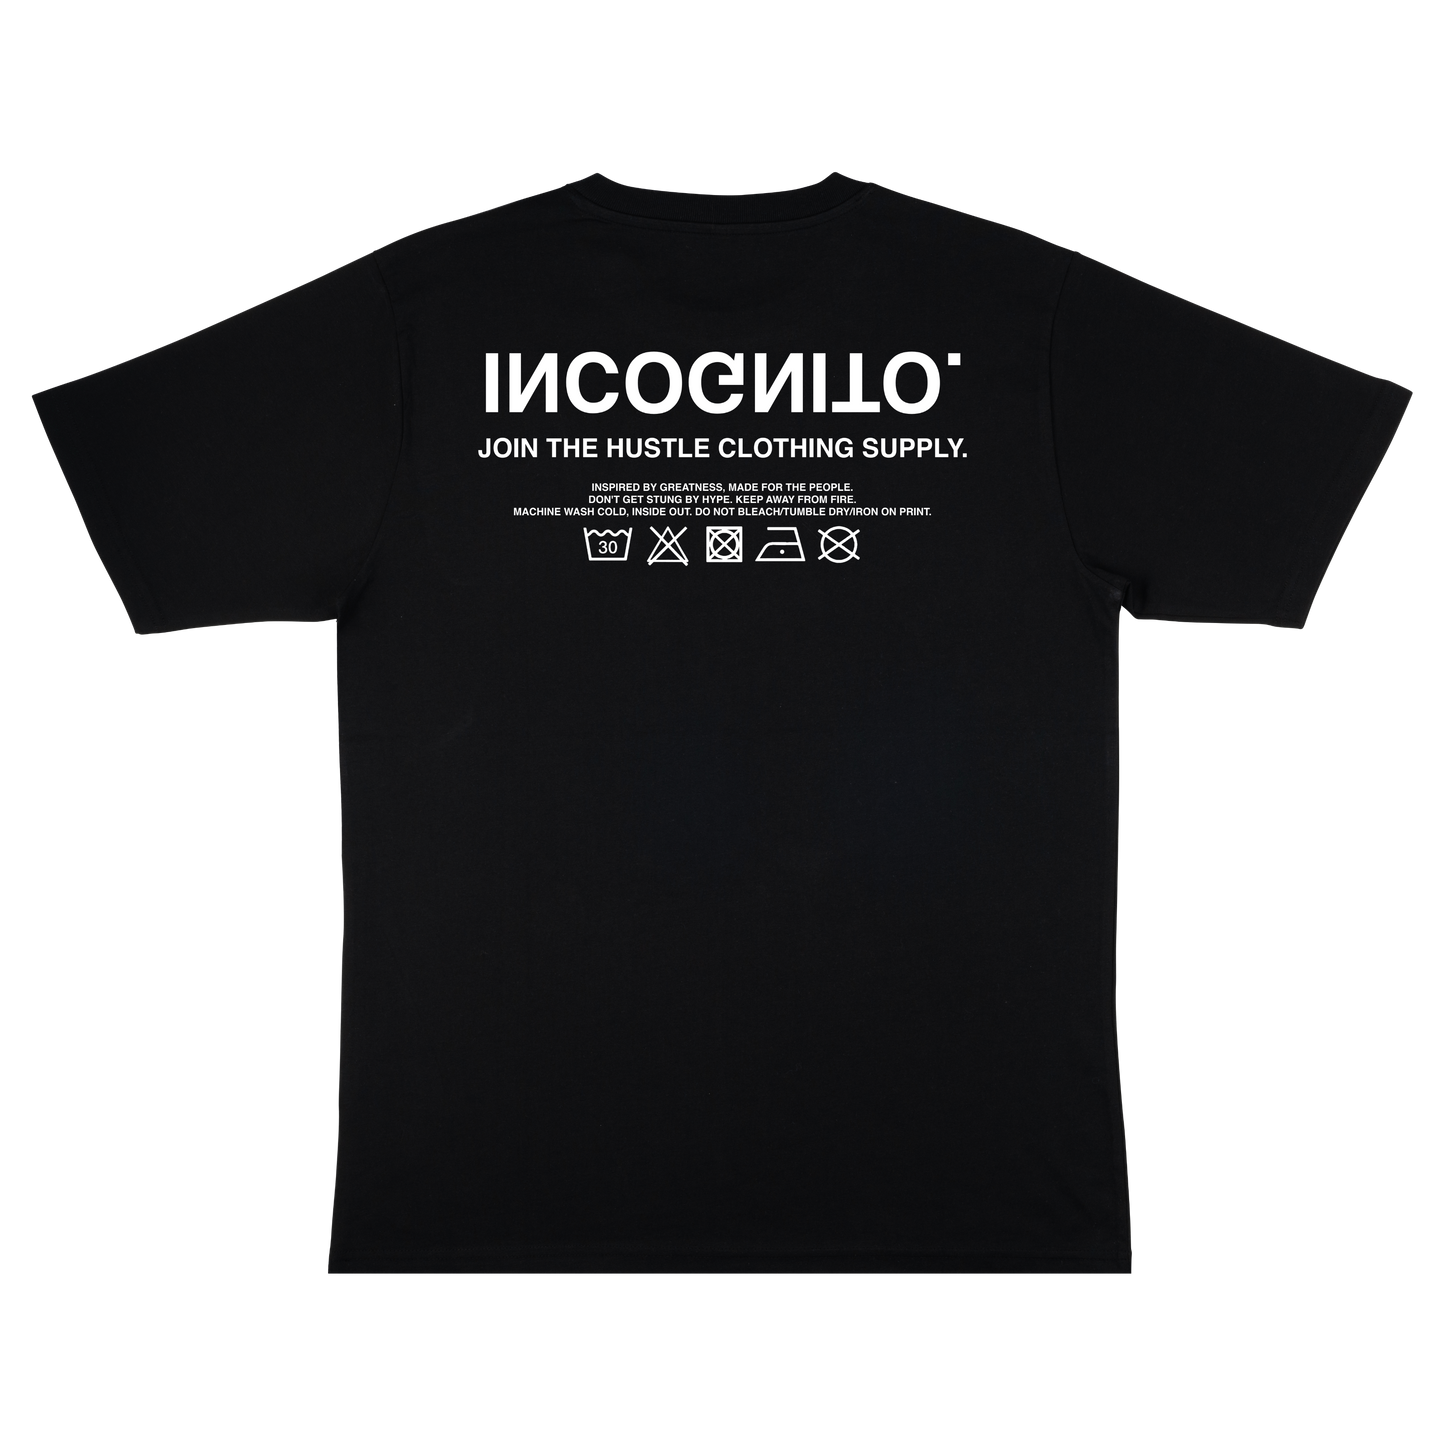 Black Incognito T-Shirt